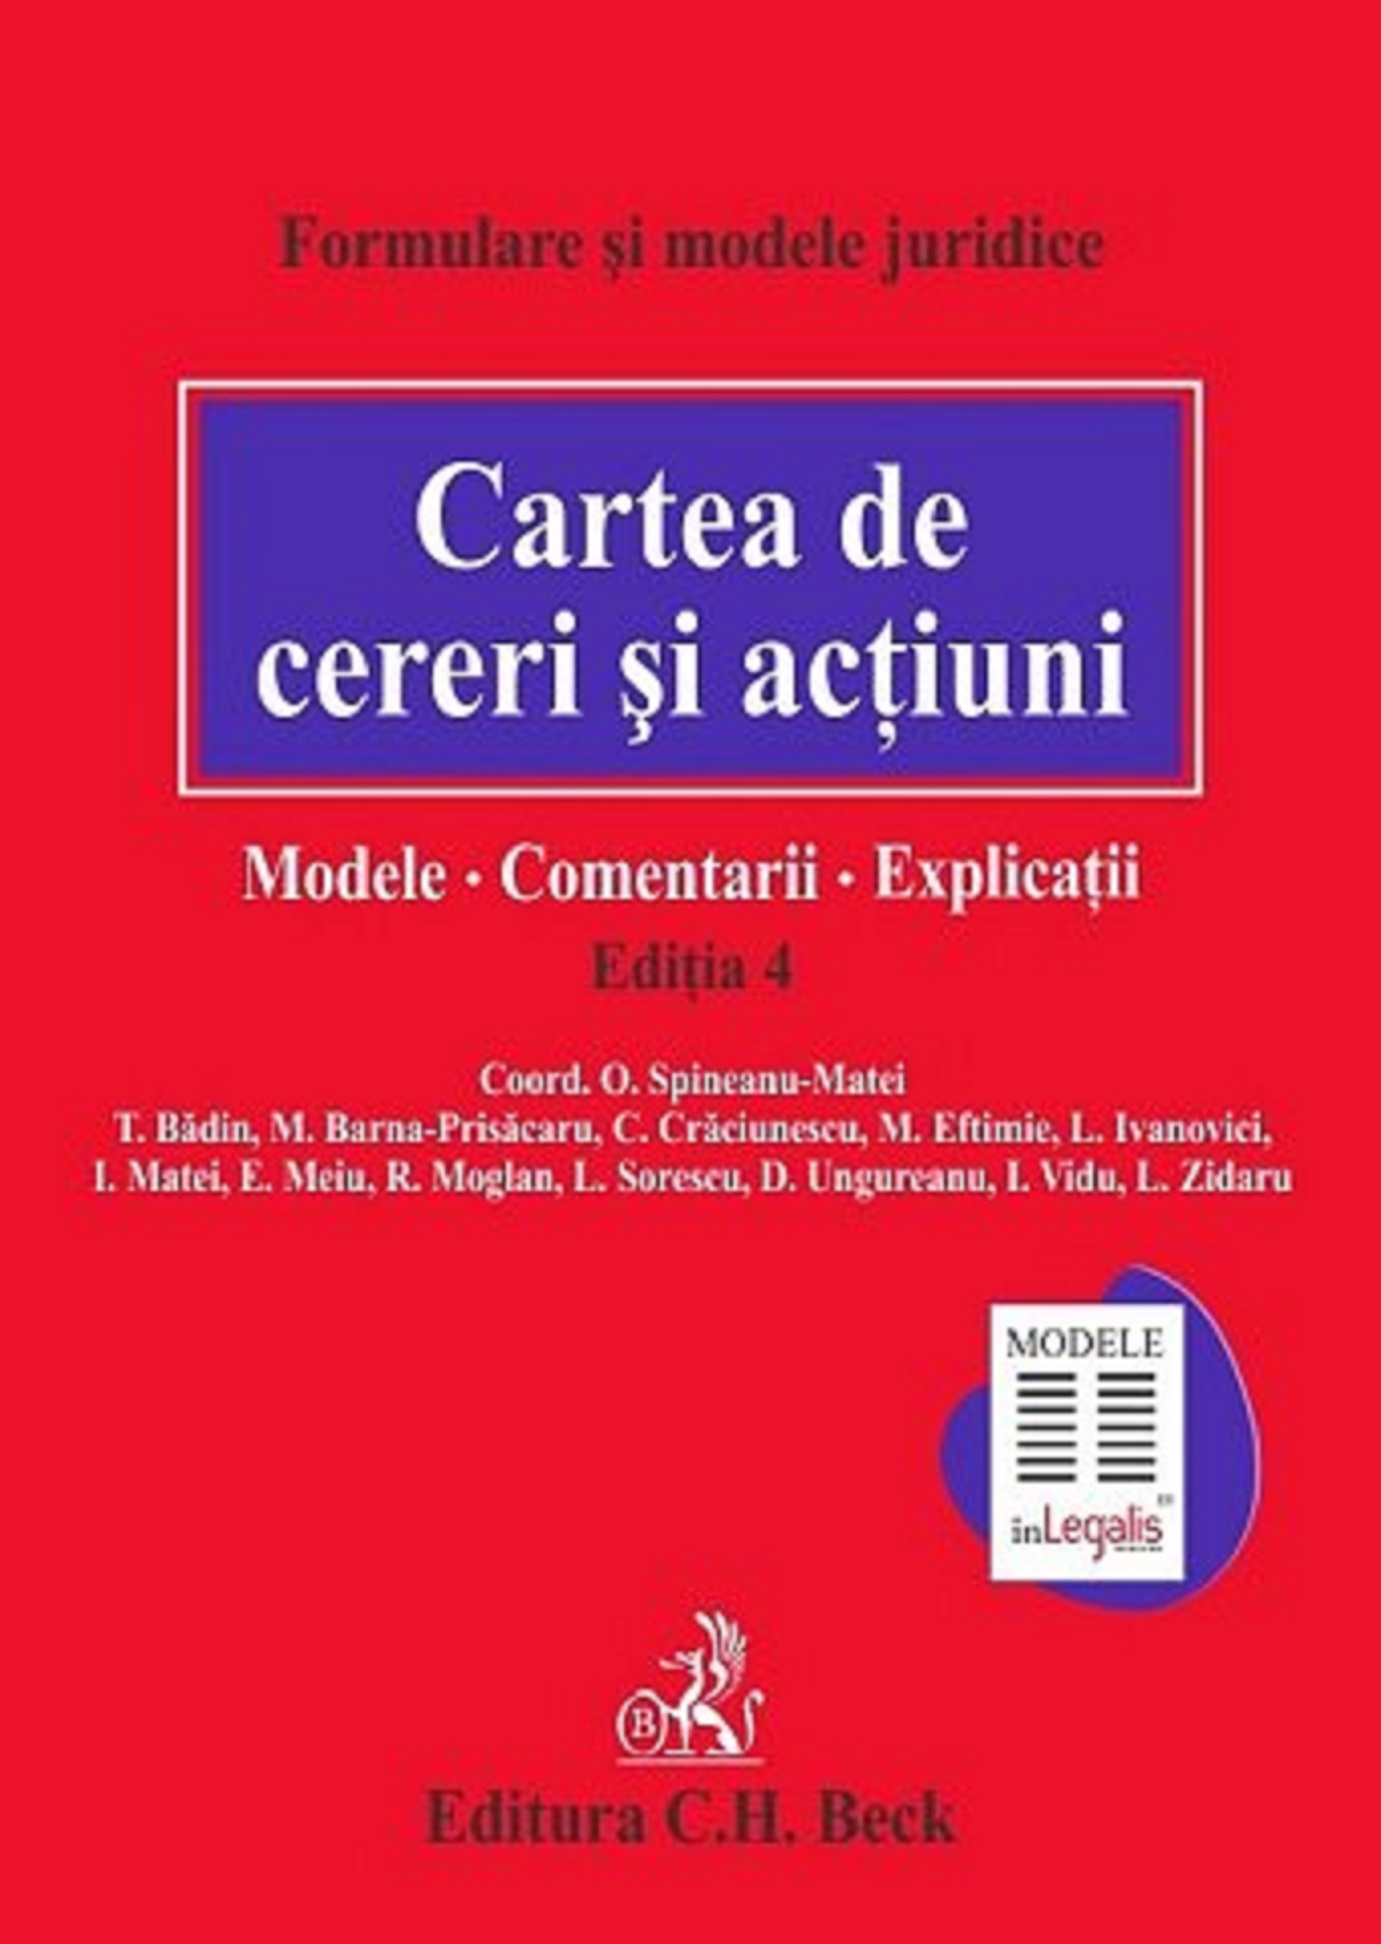 Cartea de cereri si actiuni. Modele | T. Badin, M. Barna-Prisacaru, M. Eftimie Pret Mic actiuni. imagine 2021